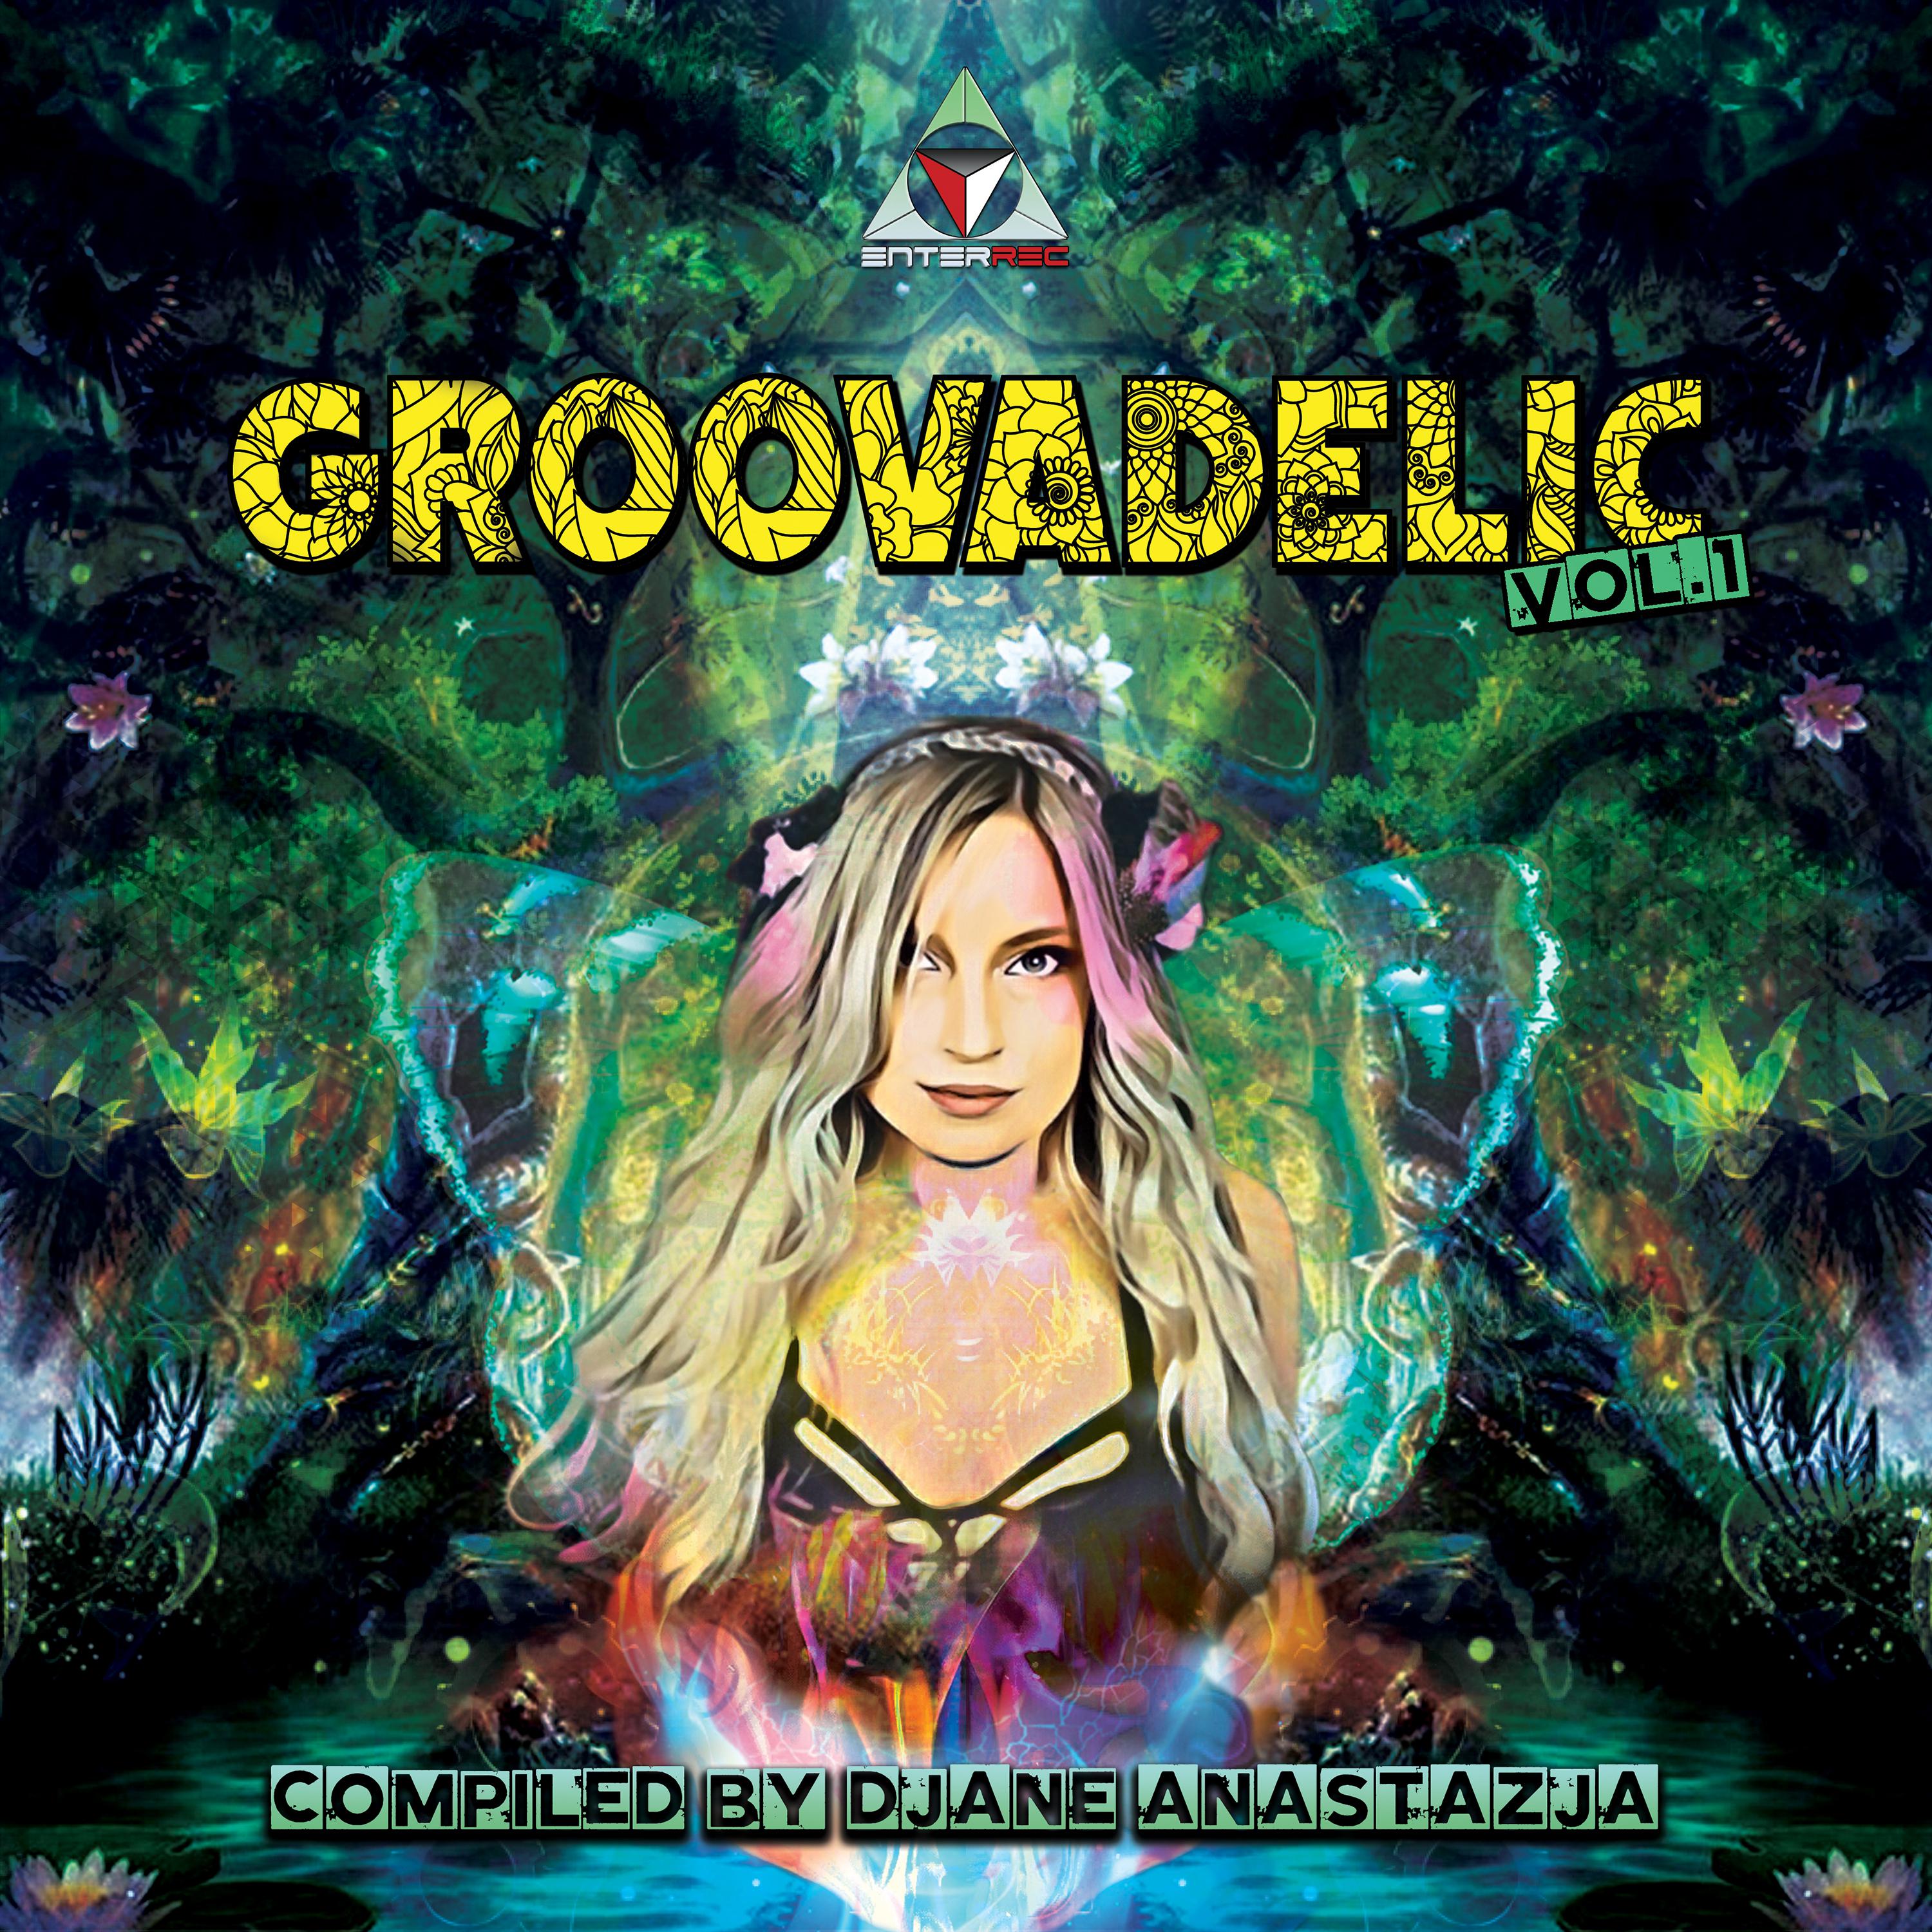 Anastazja - Groovadelic Vol.1 - Mix By Djane Anastazja (Album Mix)